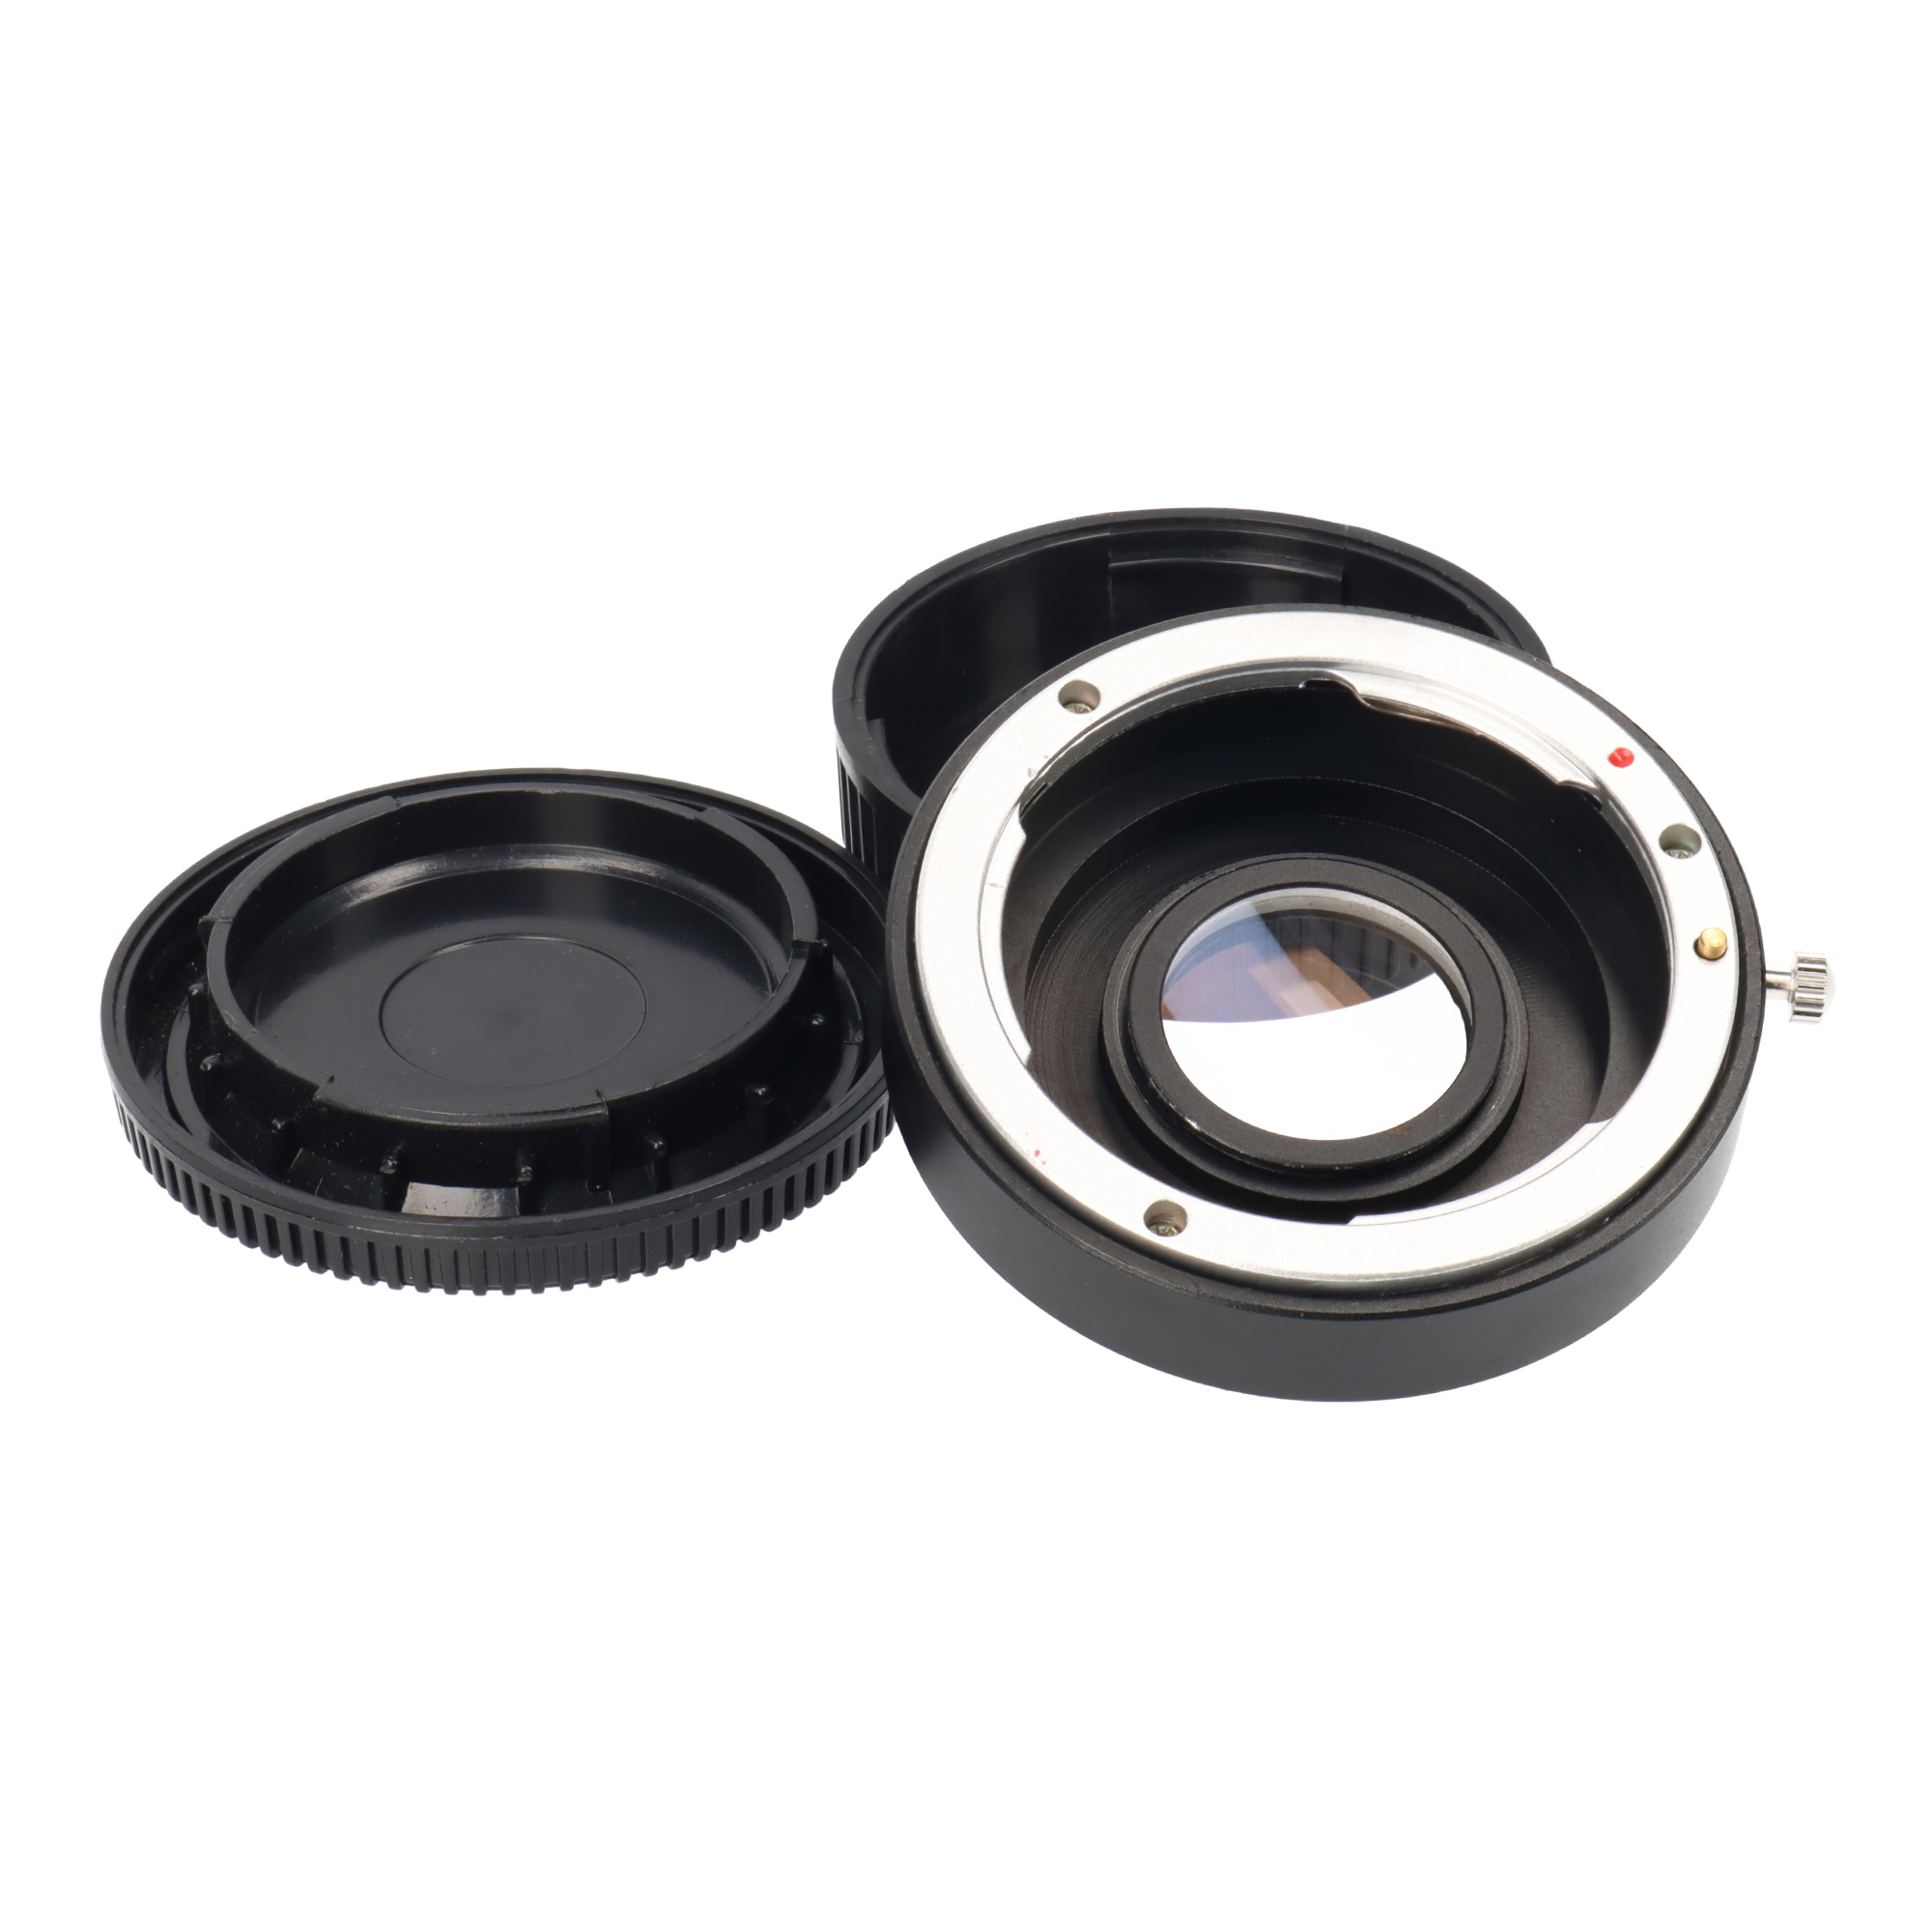 Objektivadapter für Nikon-Objektive an Pentax PK + Korrekturlinse